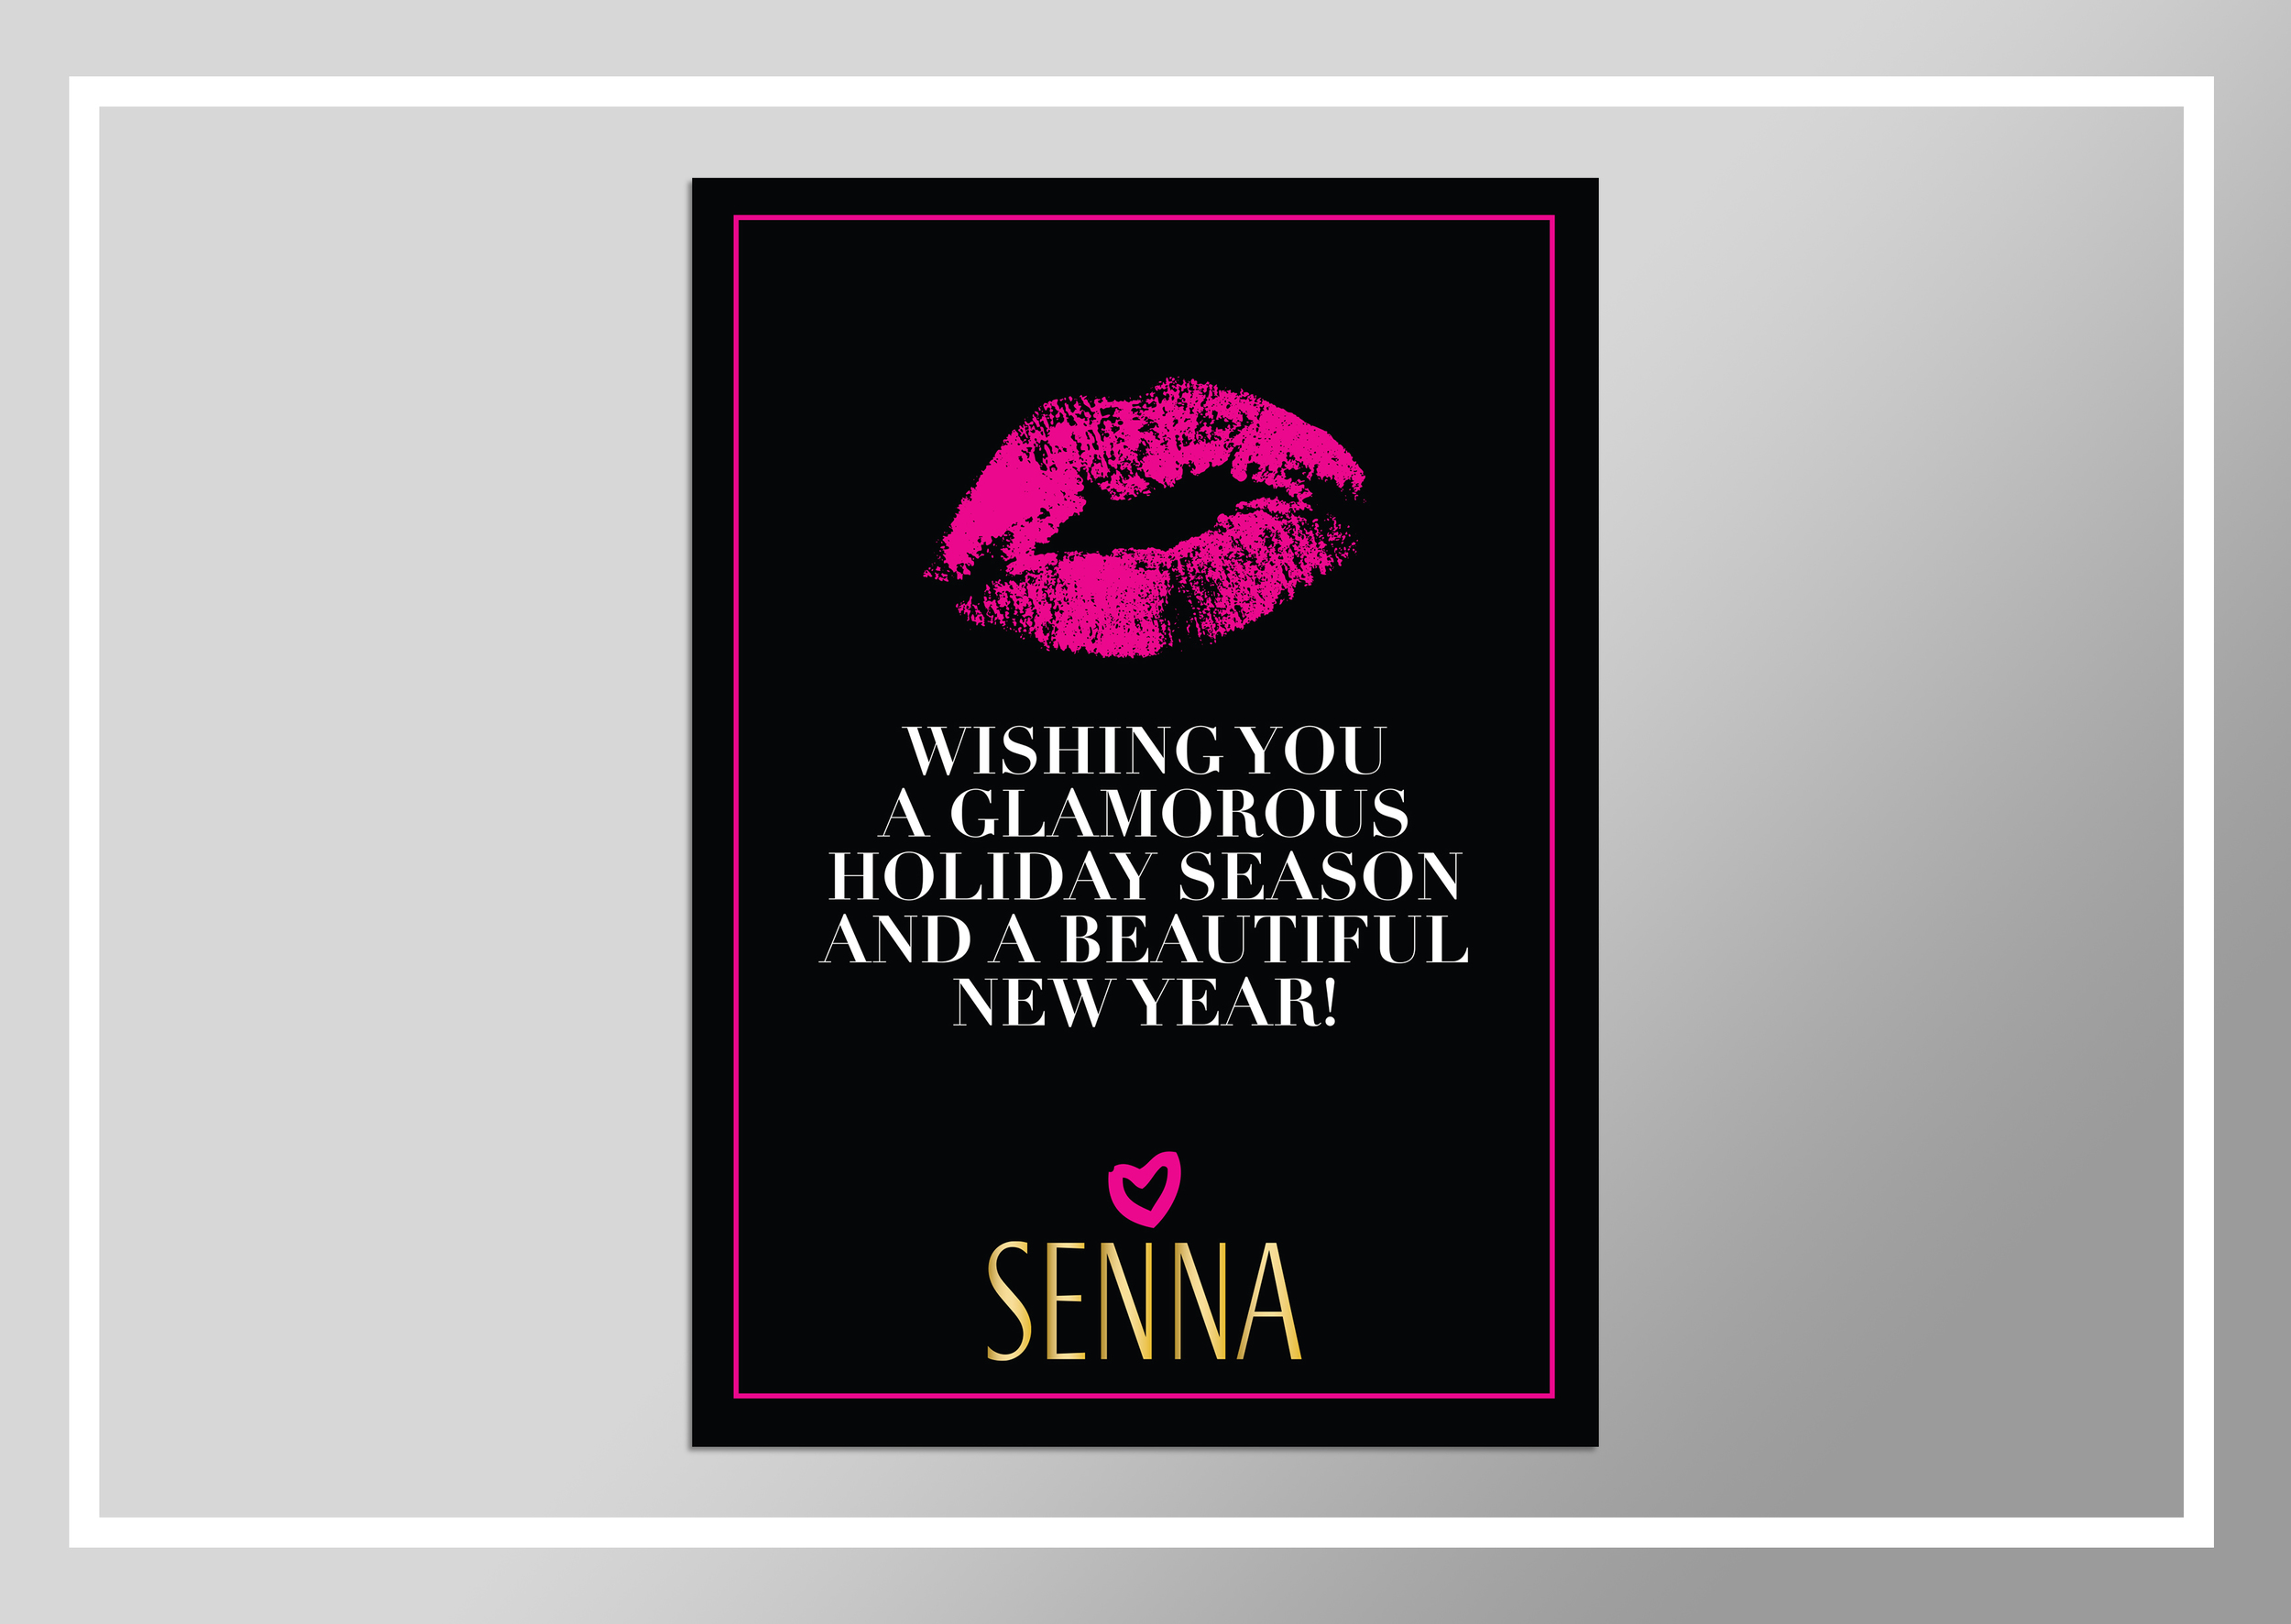  Holiday card at Senna Cosmetics 